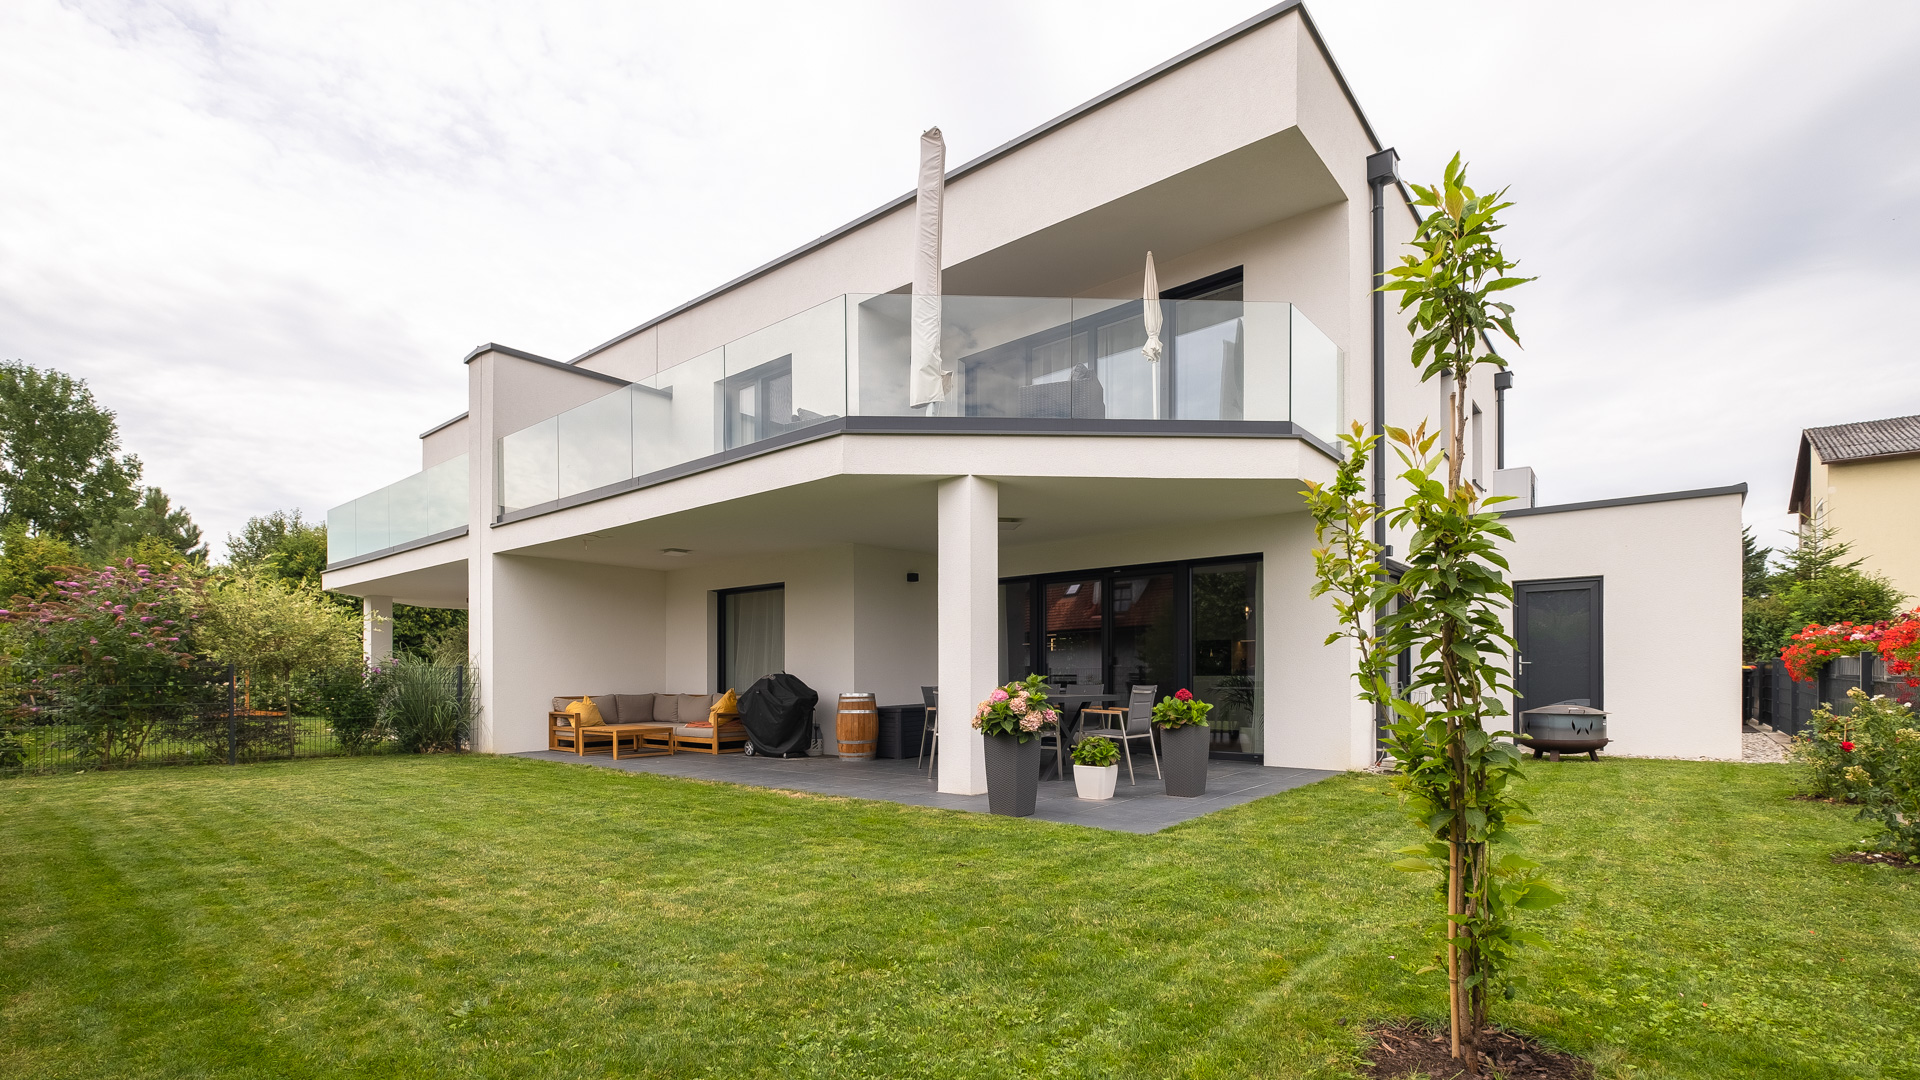 LINZ PÖSTILINGBERG: Charmante Doppelhaushälfte mit stilvollem Ambiente und Gartenidylle